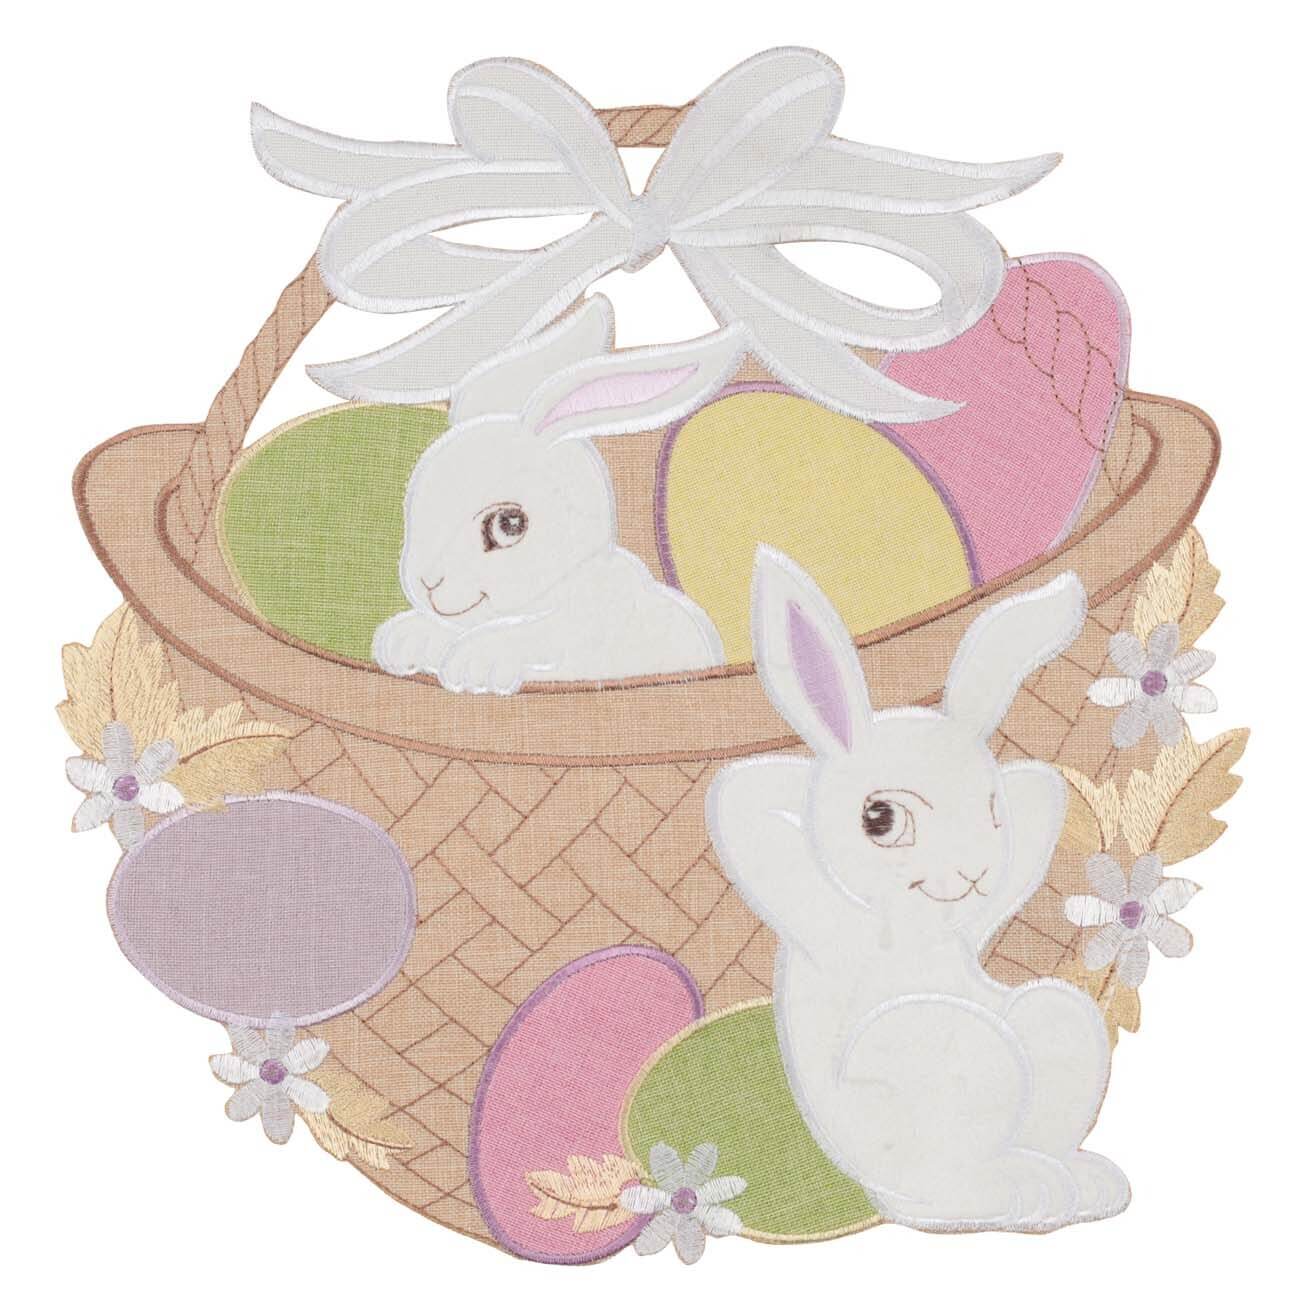 Салфетка под приборы, 30x30 cм, полиэстер, фигурная, Кролики в корзине, Easter - фото 1